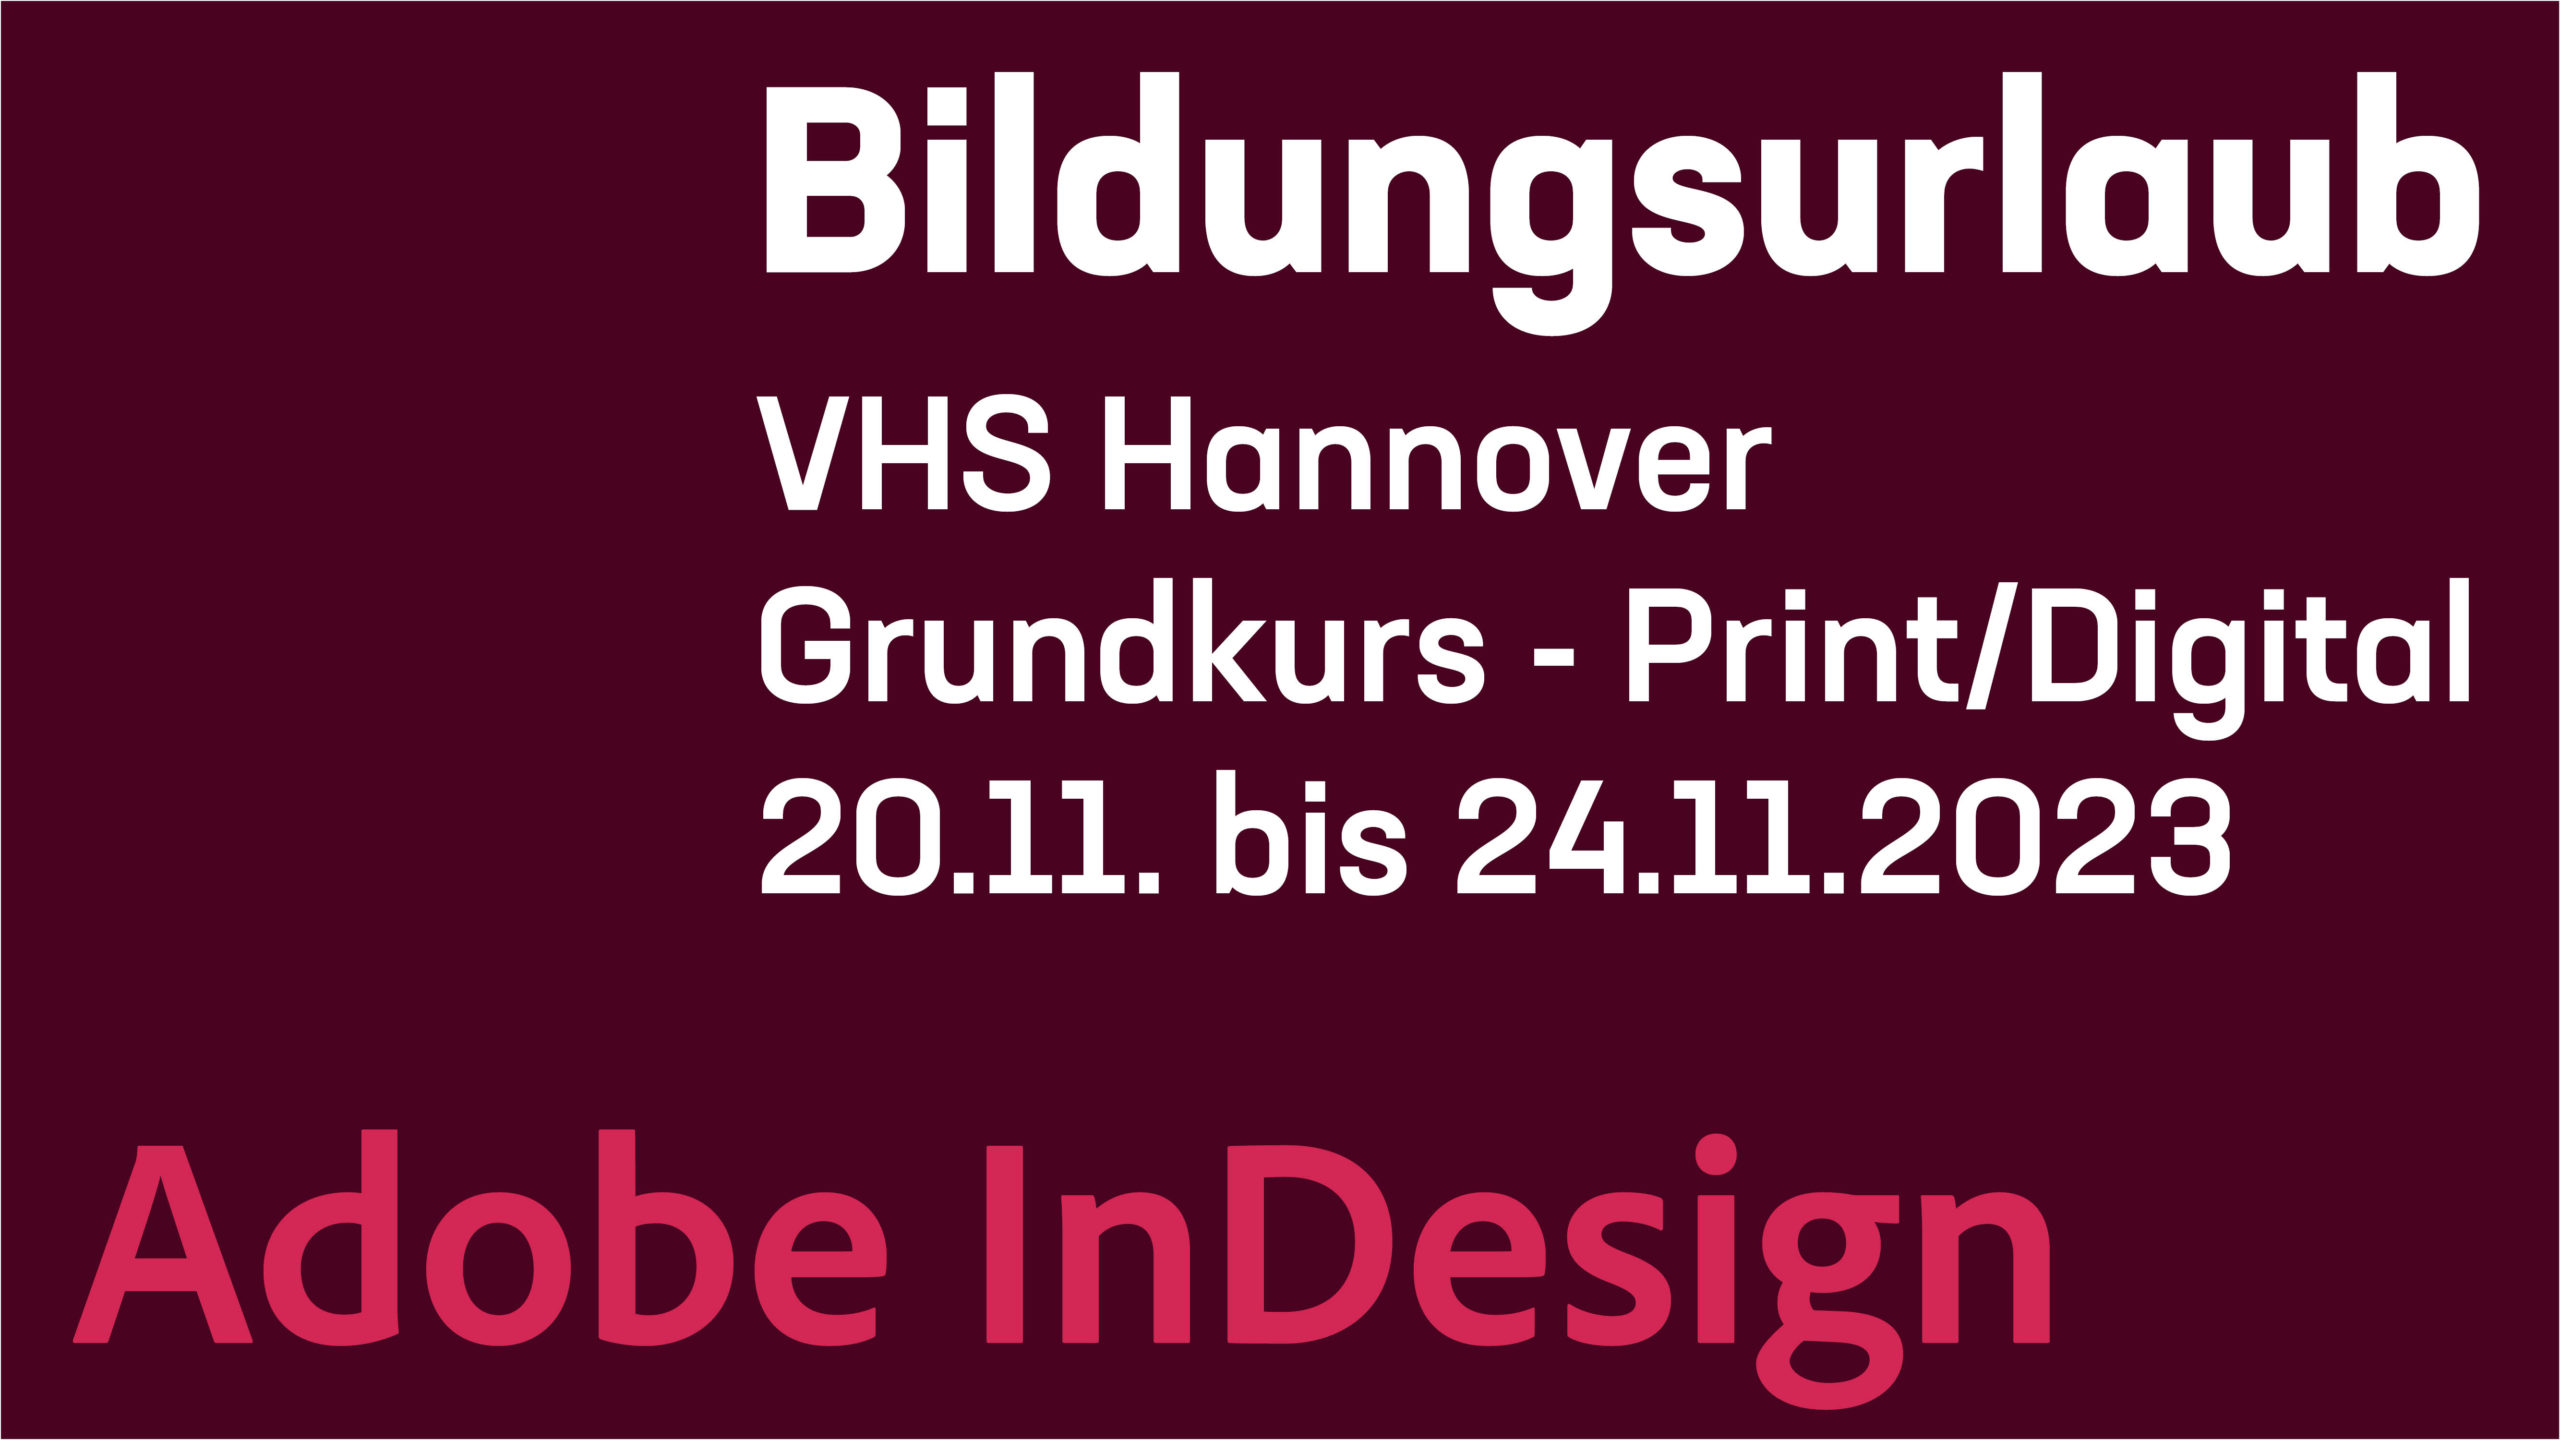 Adobe InDesign – Print & Digitale Medien gestalten - BIldungsurlaub Grundkurs